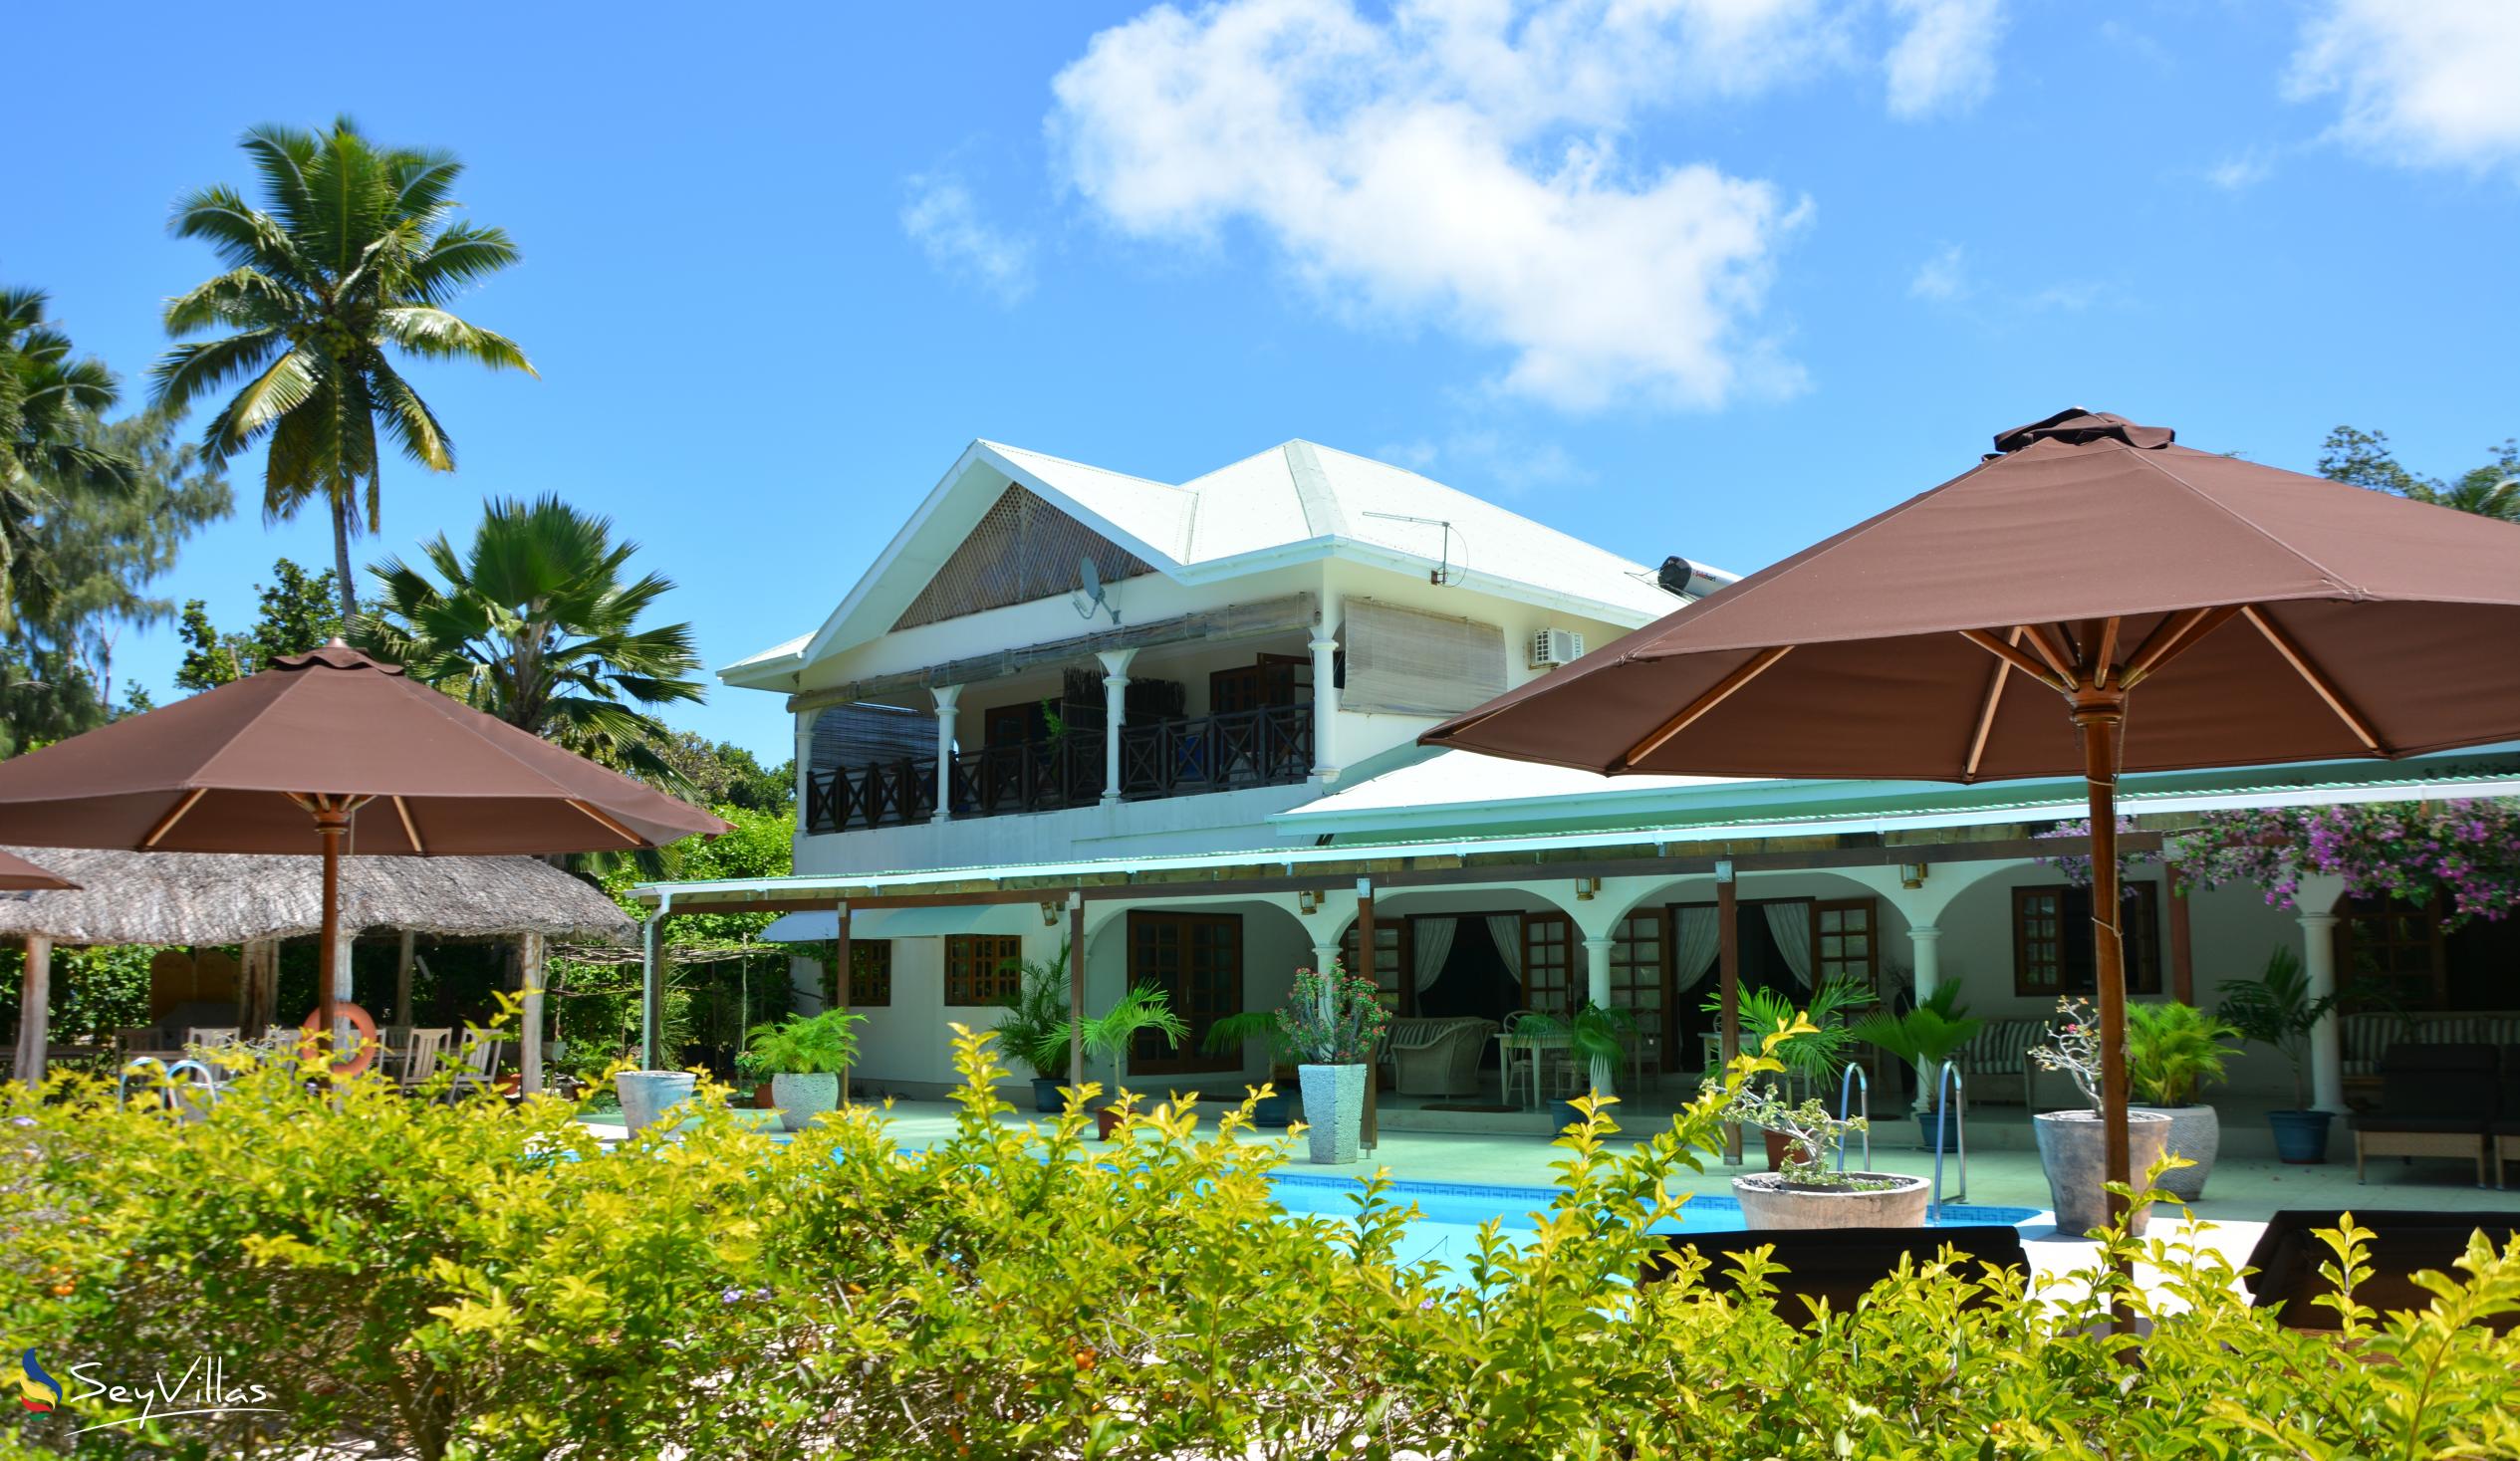 Foto 2: Villa de Cerf - Extérieur - Cerf Island (Seychelles)